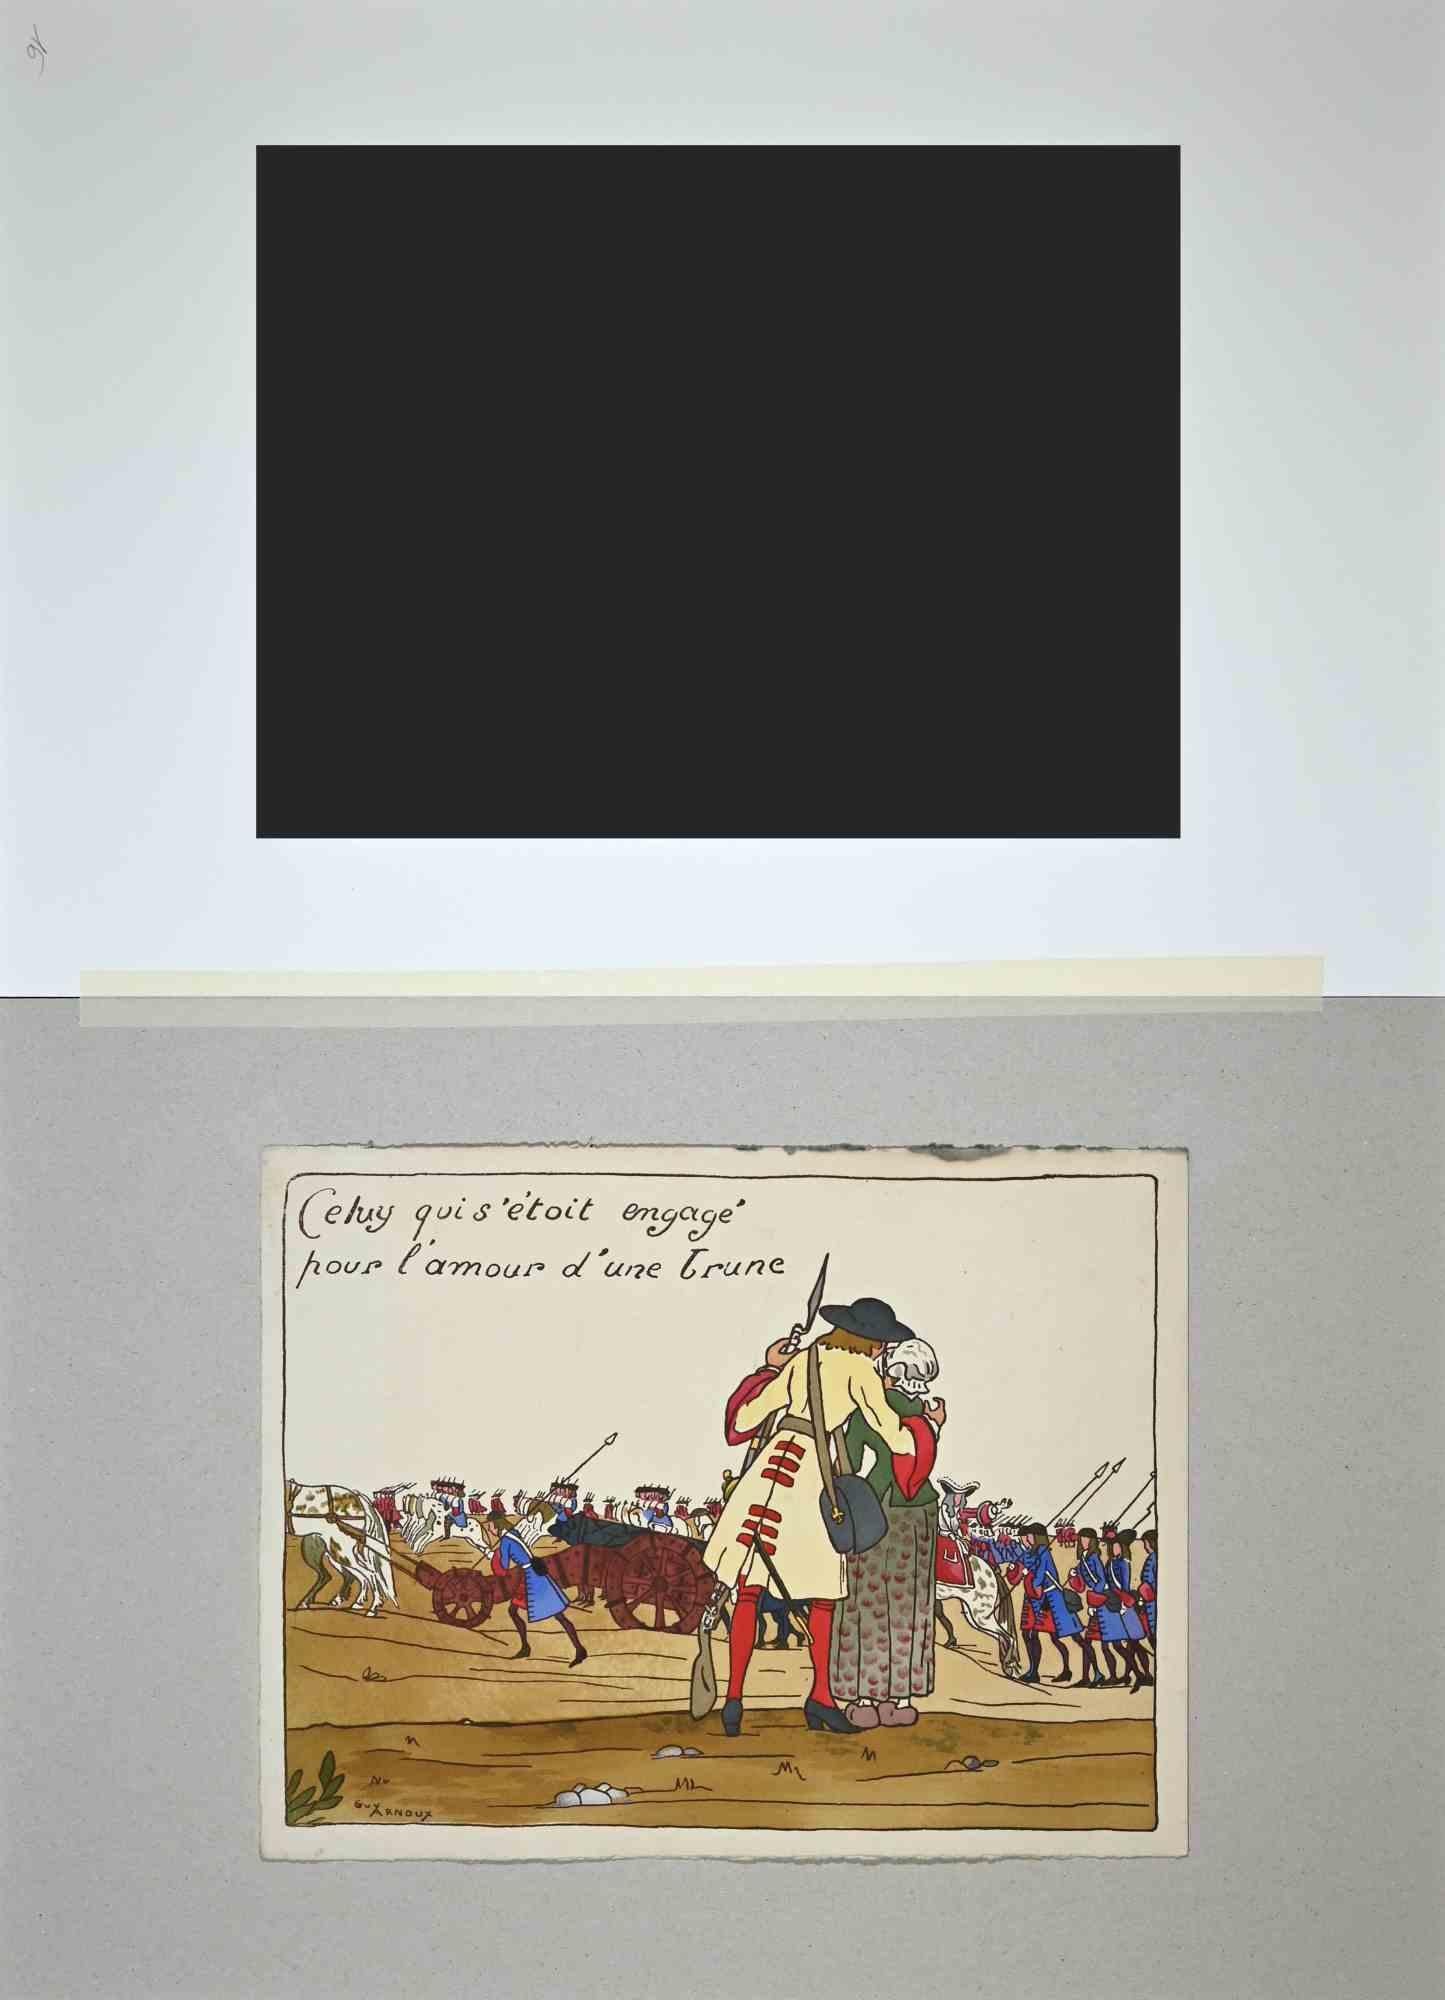 Scène galante est une gravure sur bois originale réalisée par Guy Arnoux (1886-1951).

Bon état, signé dans le coin inférieur gauche.

Inclus un passe-partout en carton blanc (34x49 cm).

Guy Arnoux , né en 1886 à Paris et mort en 1951 à Ardon